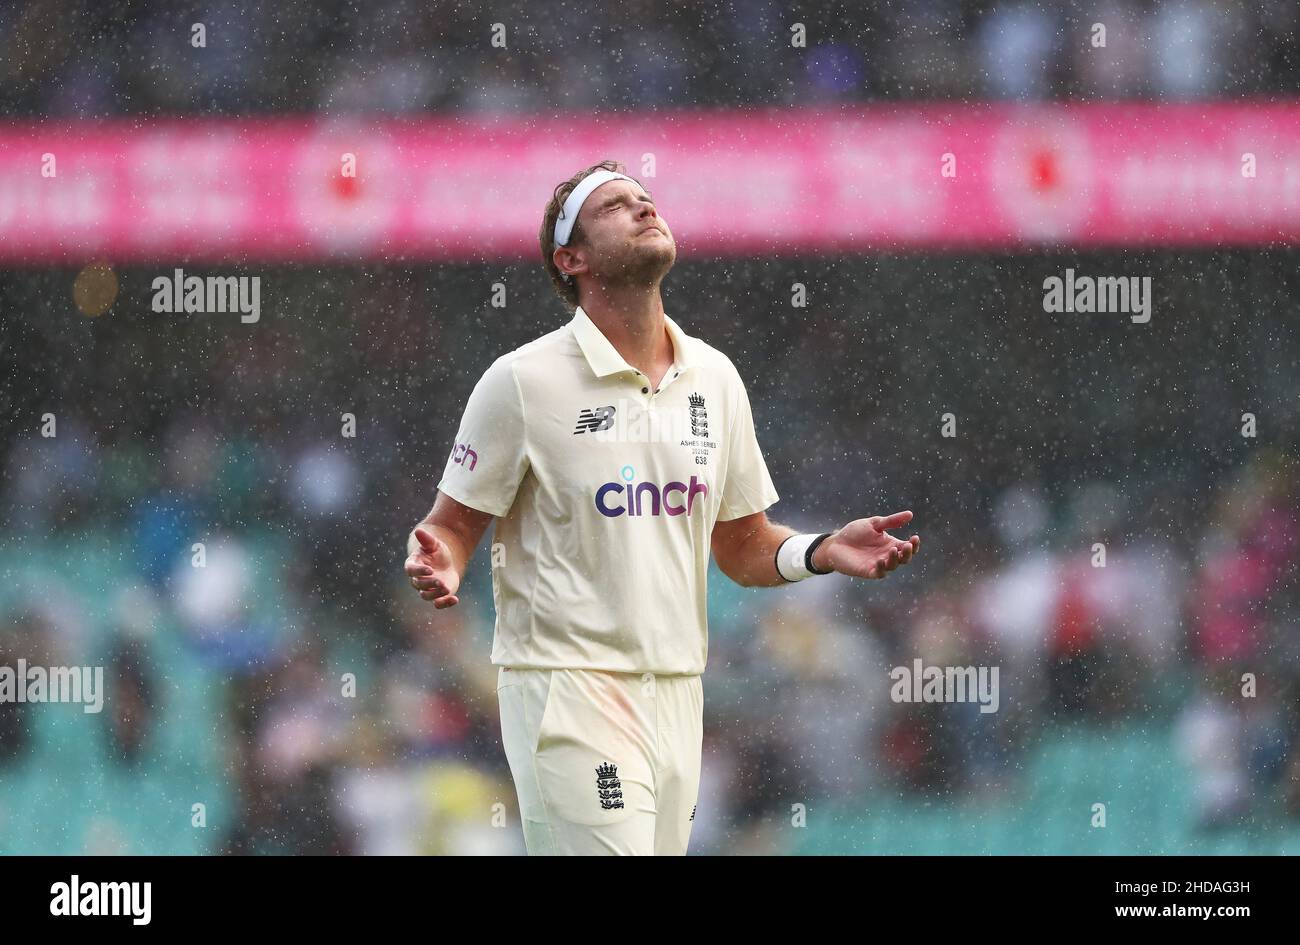 L'Inghilterra Stuart Broad cammina sotto la pioggia al termine del gioco durante il giorno uno del quarto test delle ceneri al Sydney Cricket Ground, Sydney. Data foto: Mercoledì 5 gennaio 2022. Foto Stock